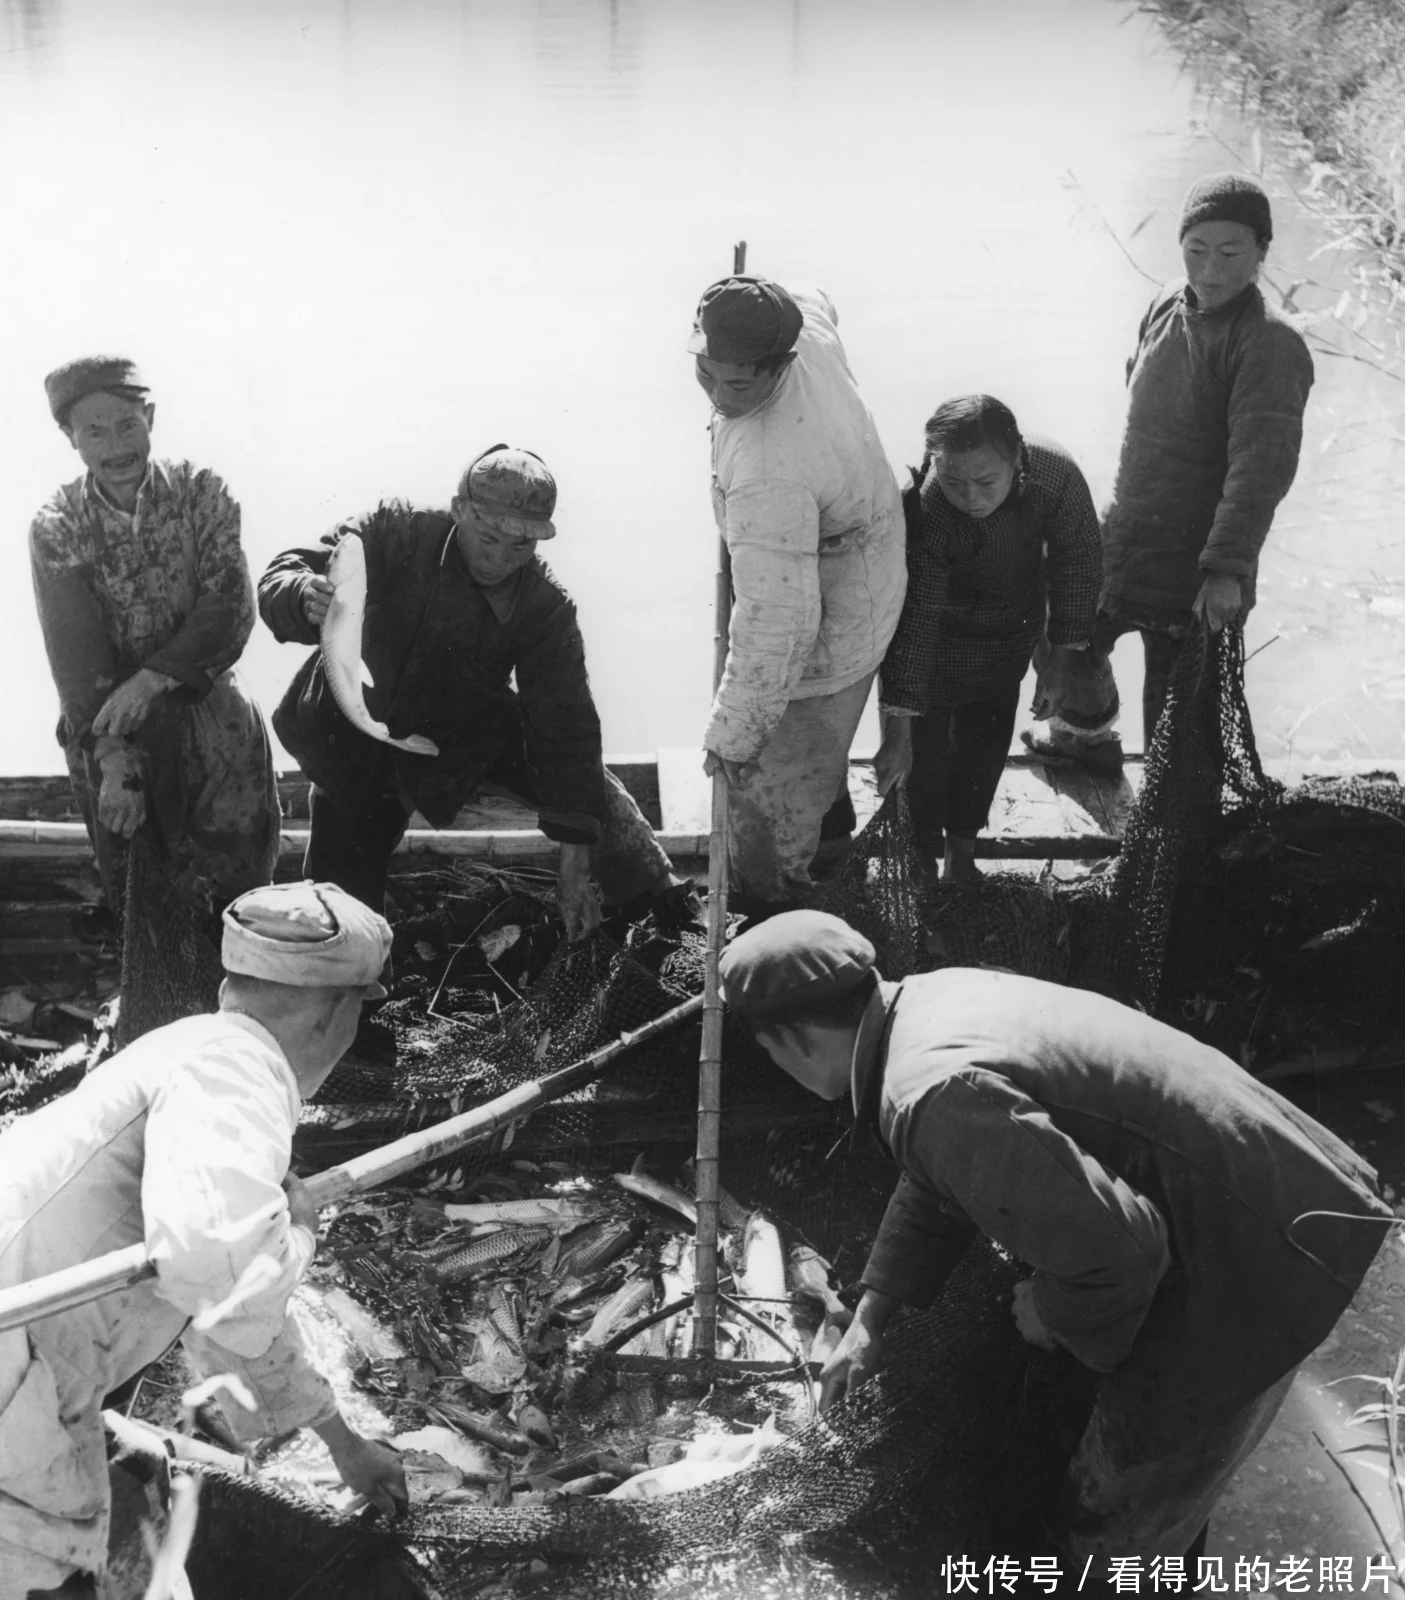 渔民对渔获物进行分类。